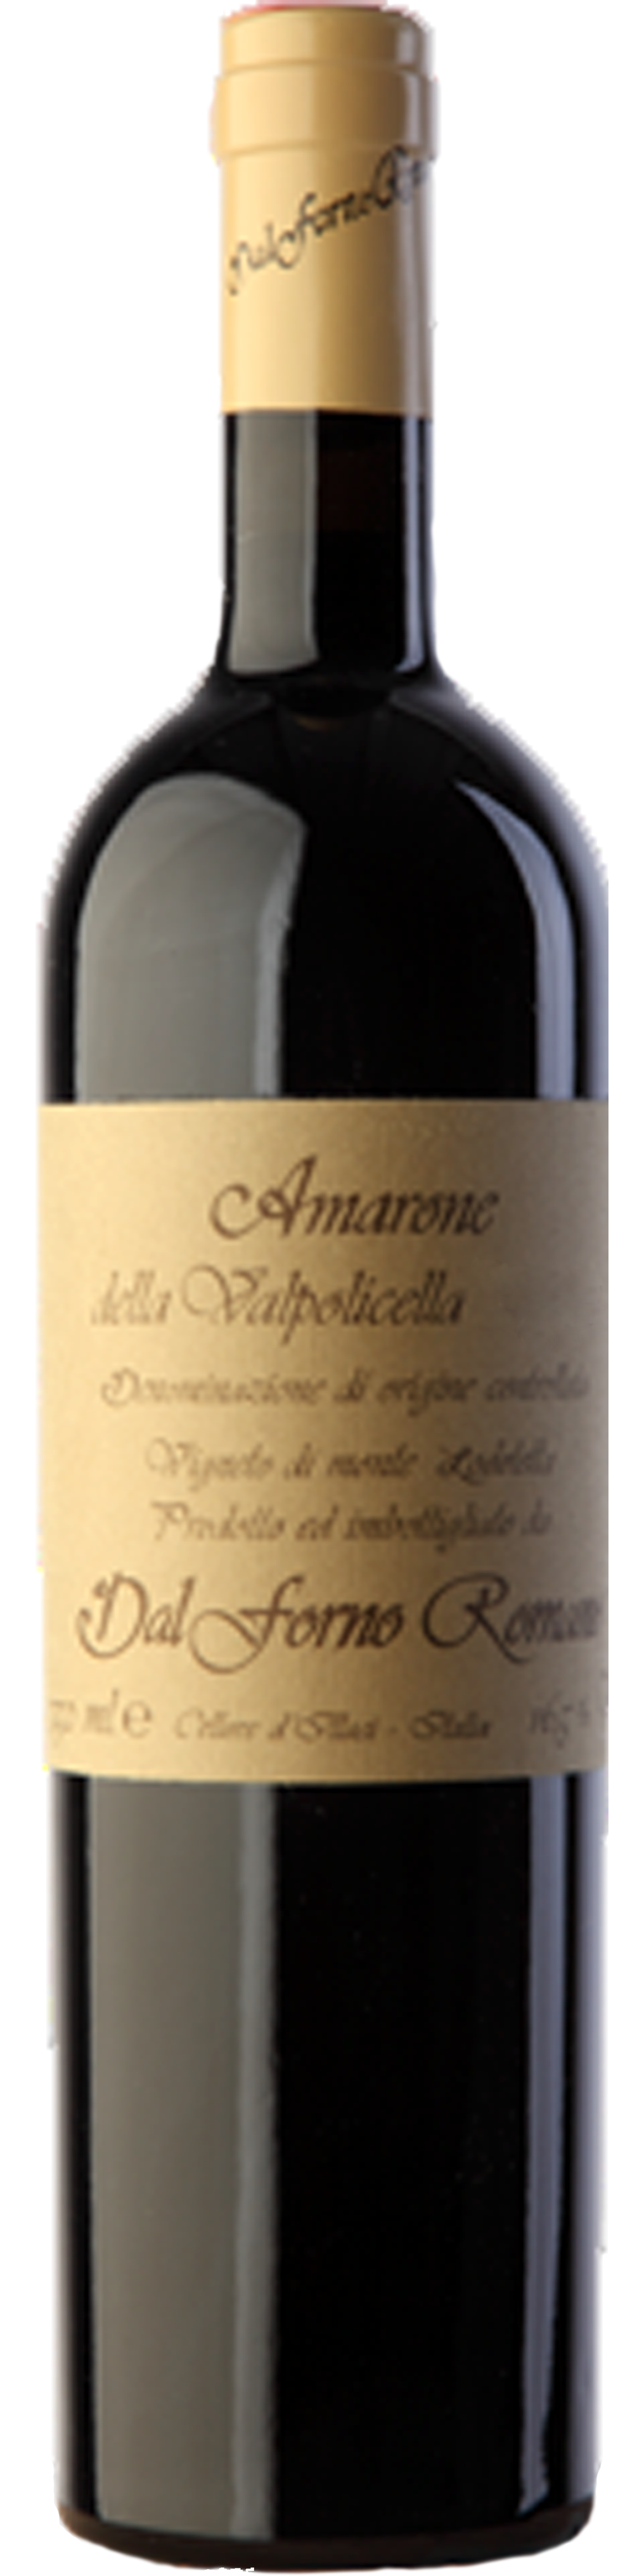 Bottle shot of 2003 Amarone Della Valpolicella